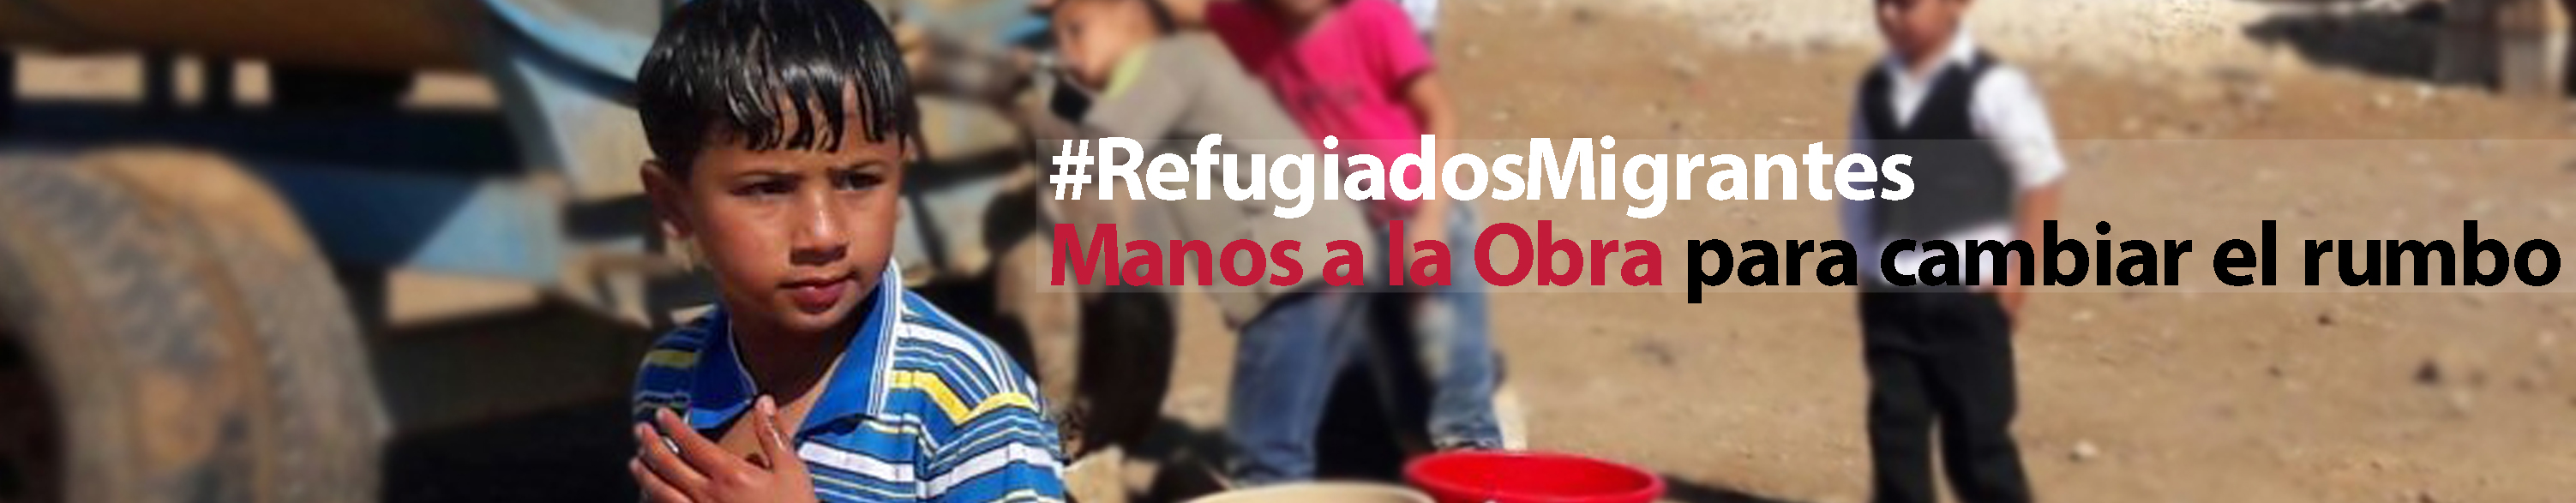 CESAL campaña Manos a la Obra 2015 Refugiados